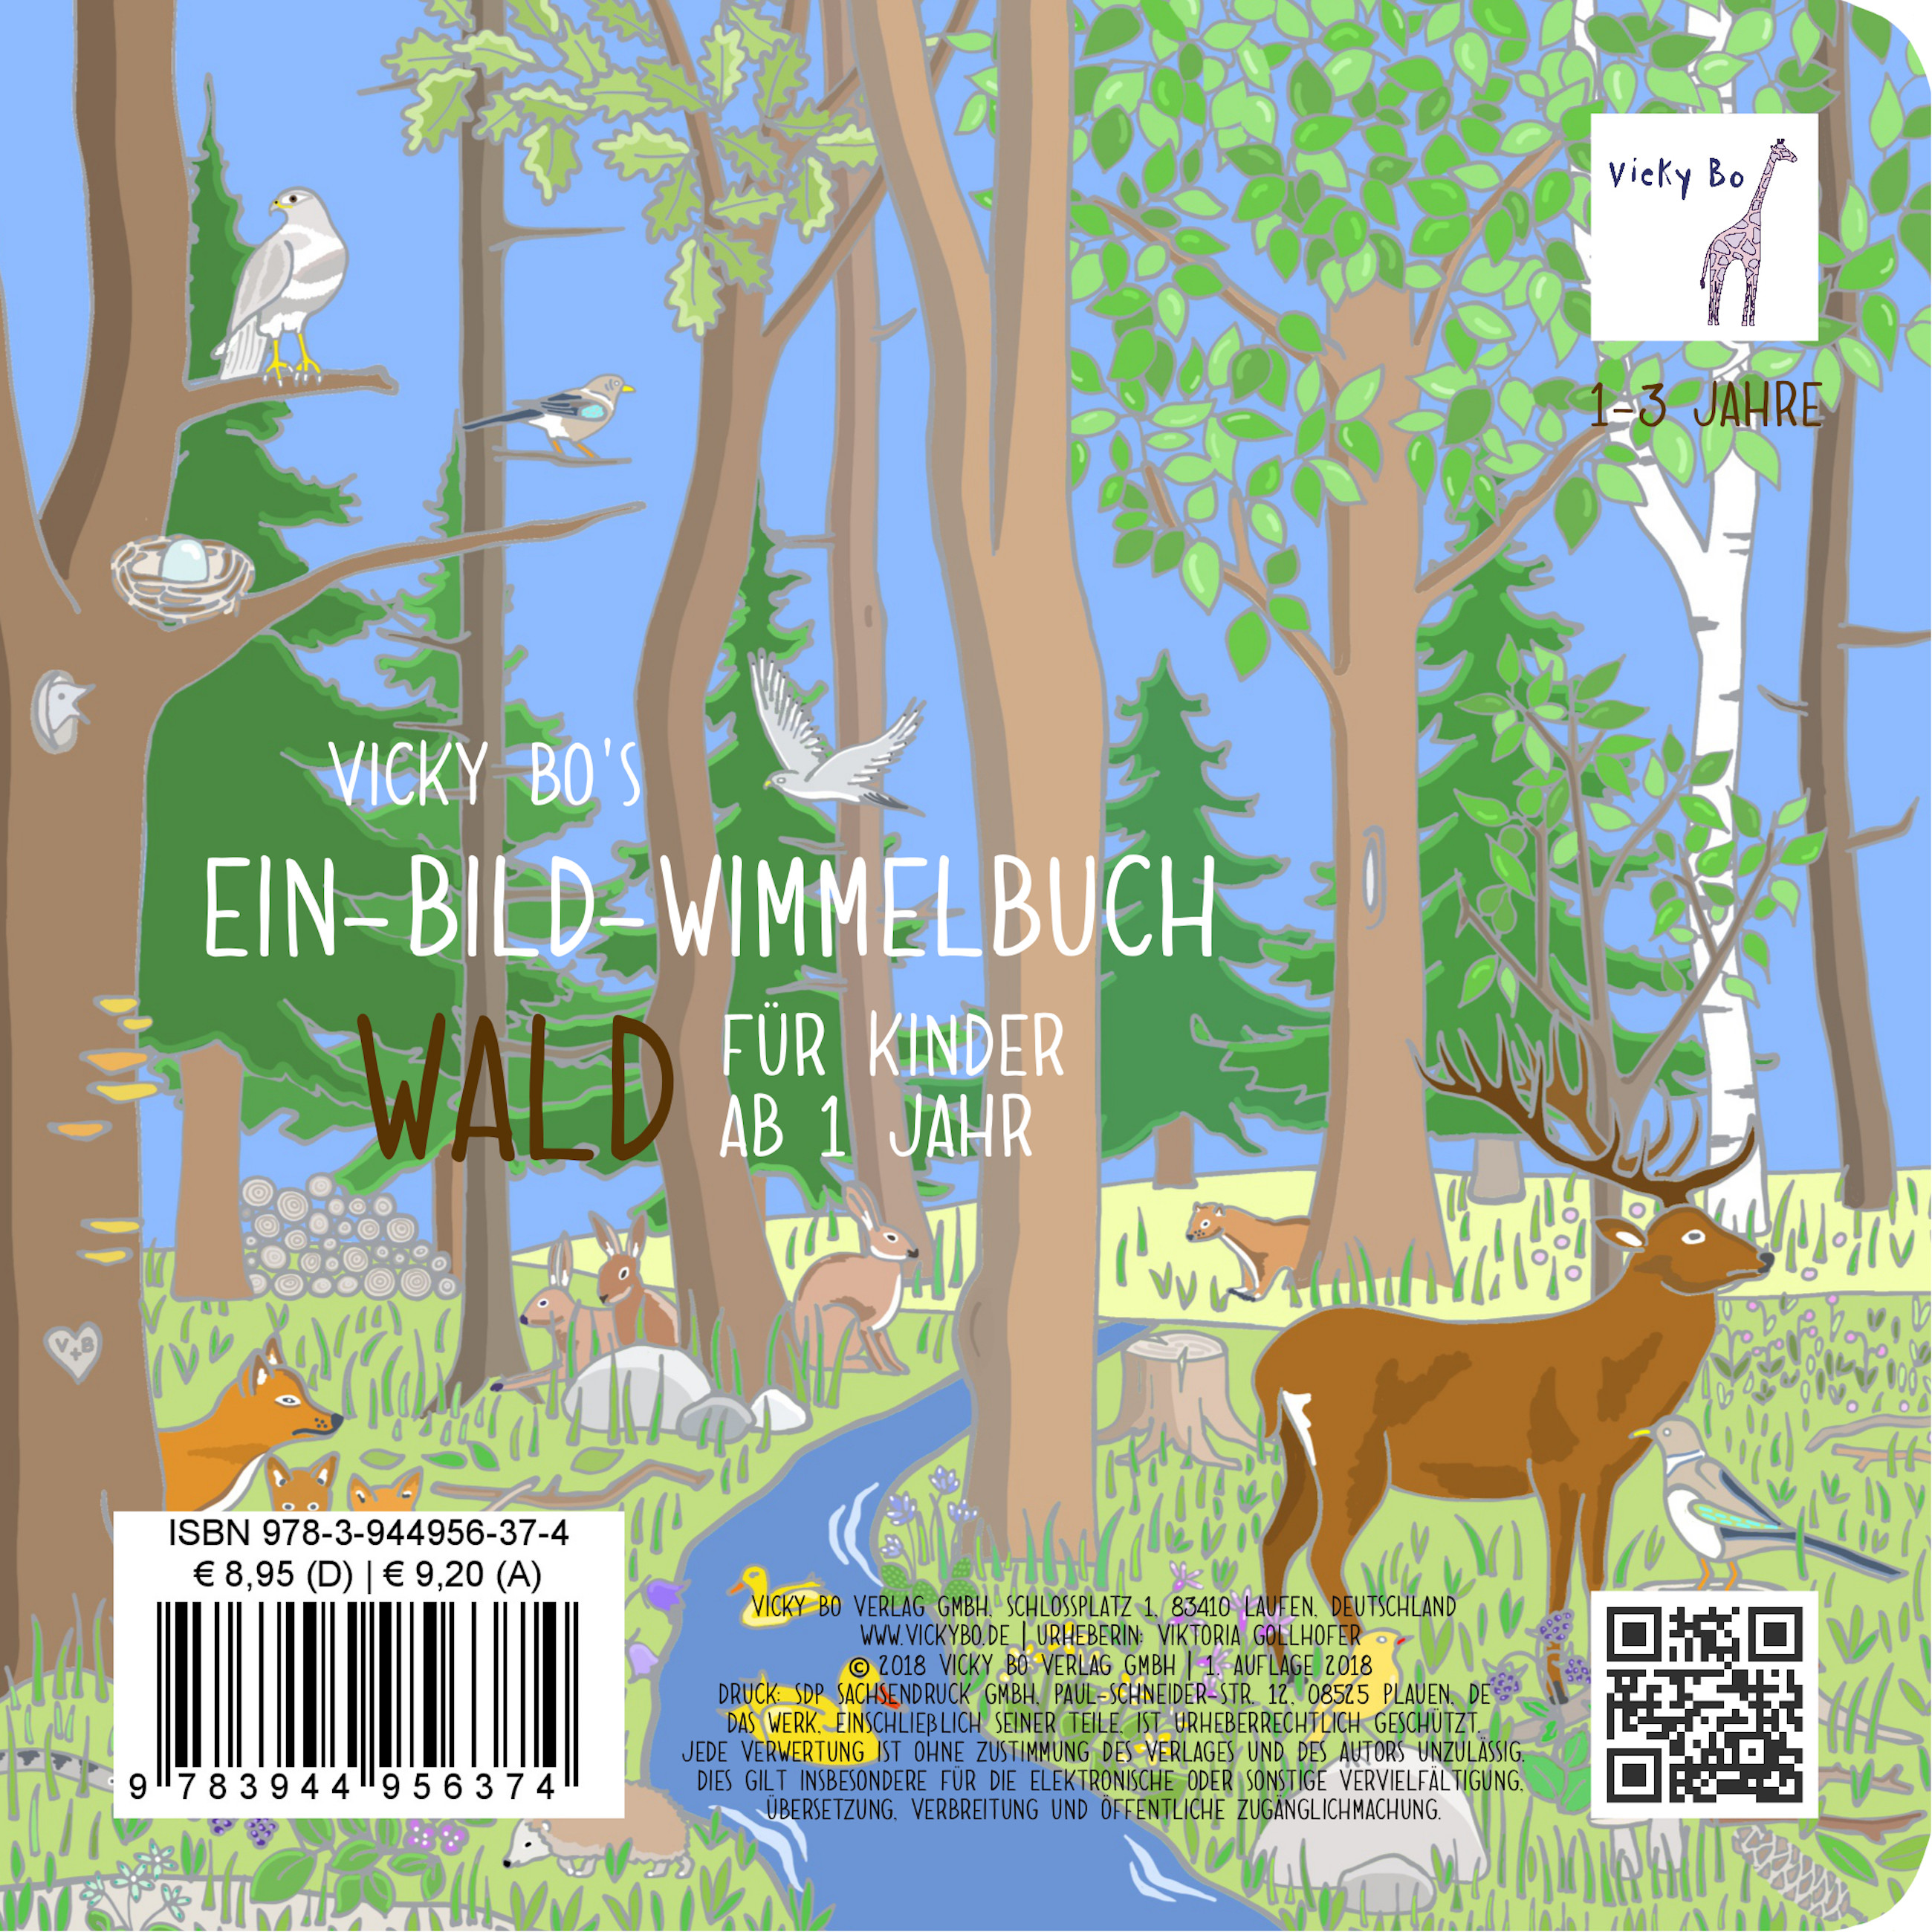 Ein-Bild-Wimmelbuch ab 1 Jahr - Wald